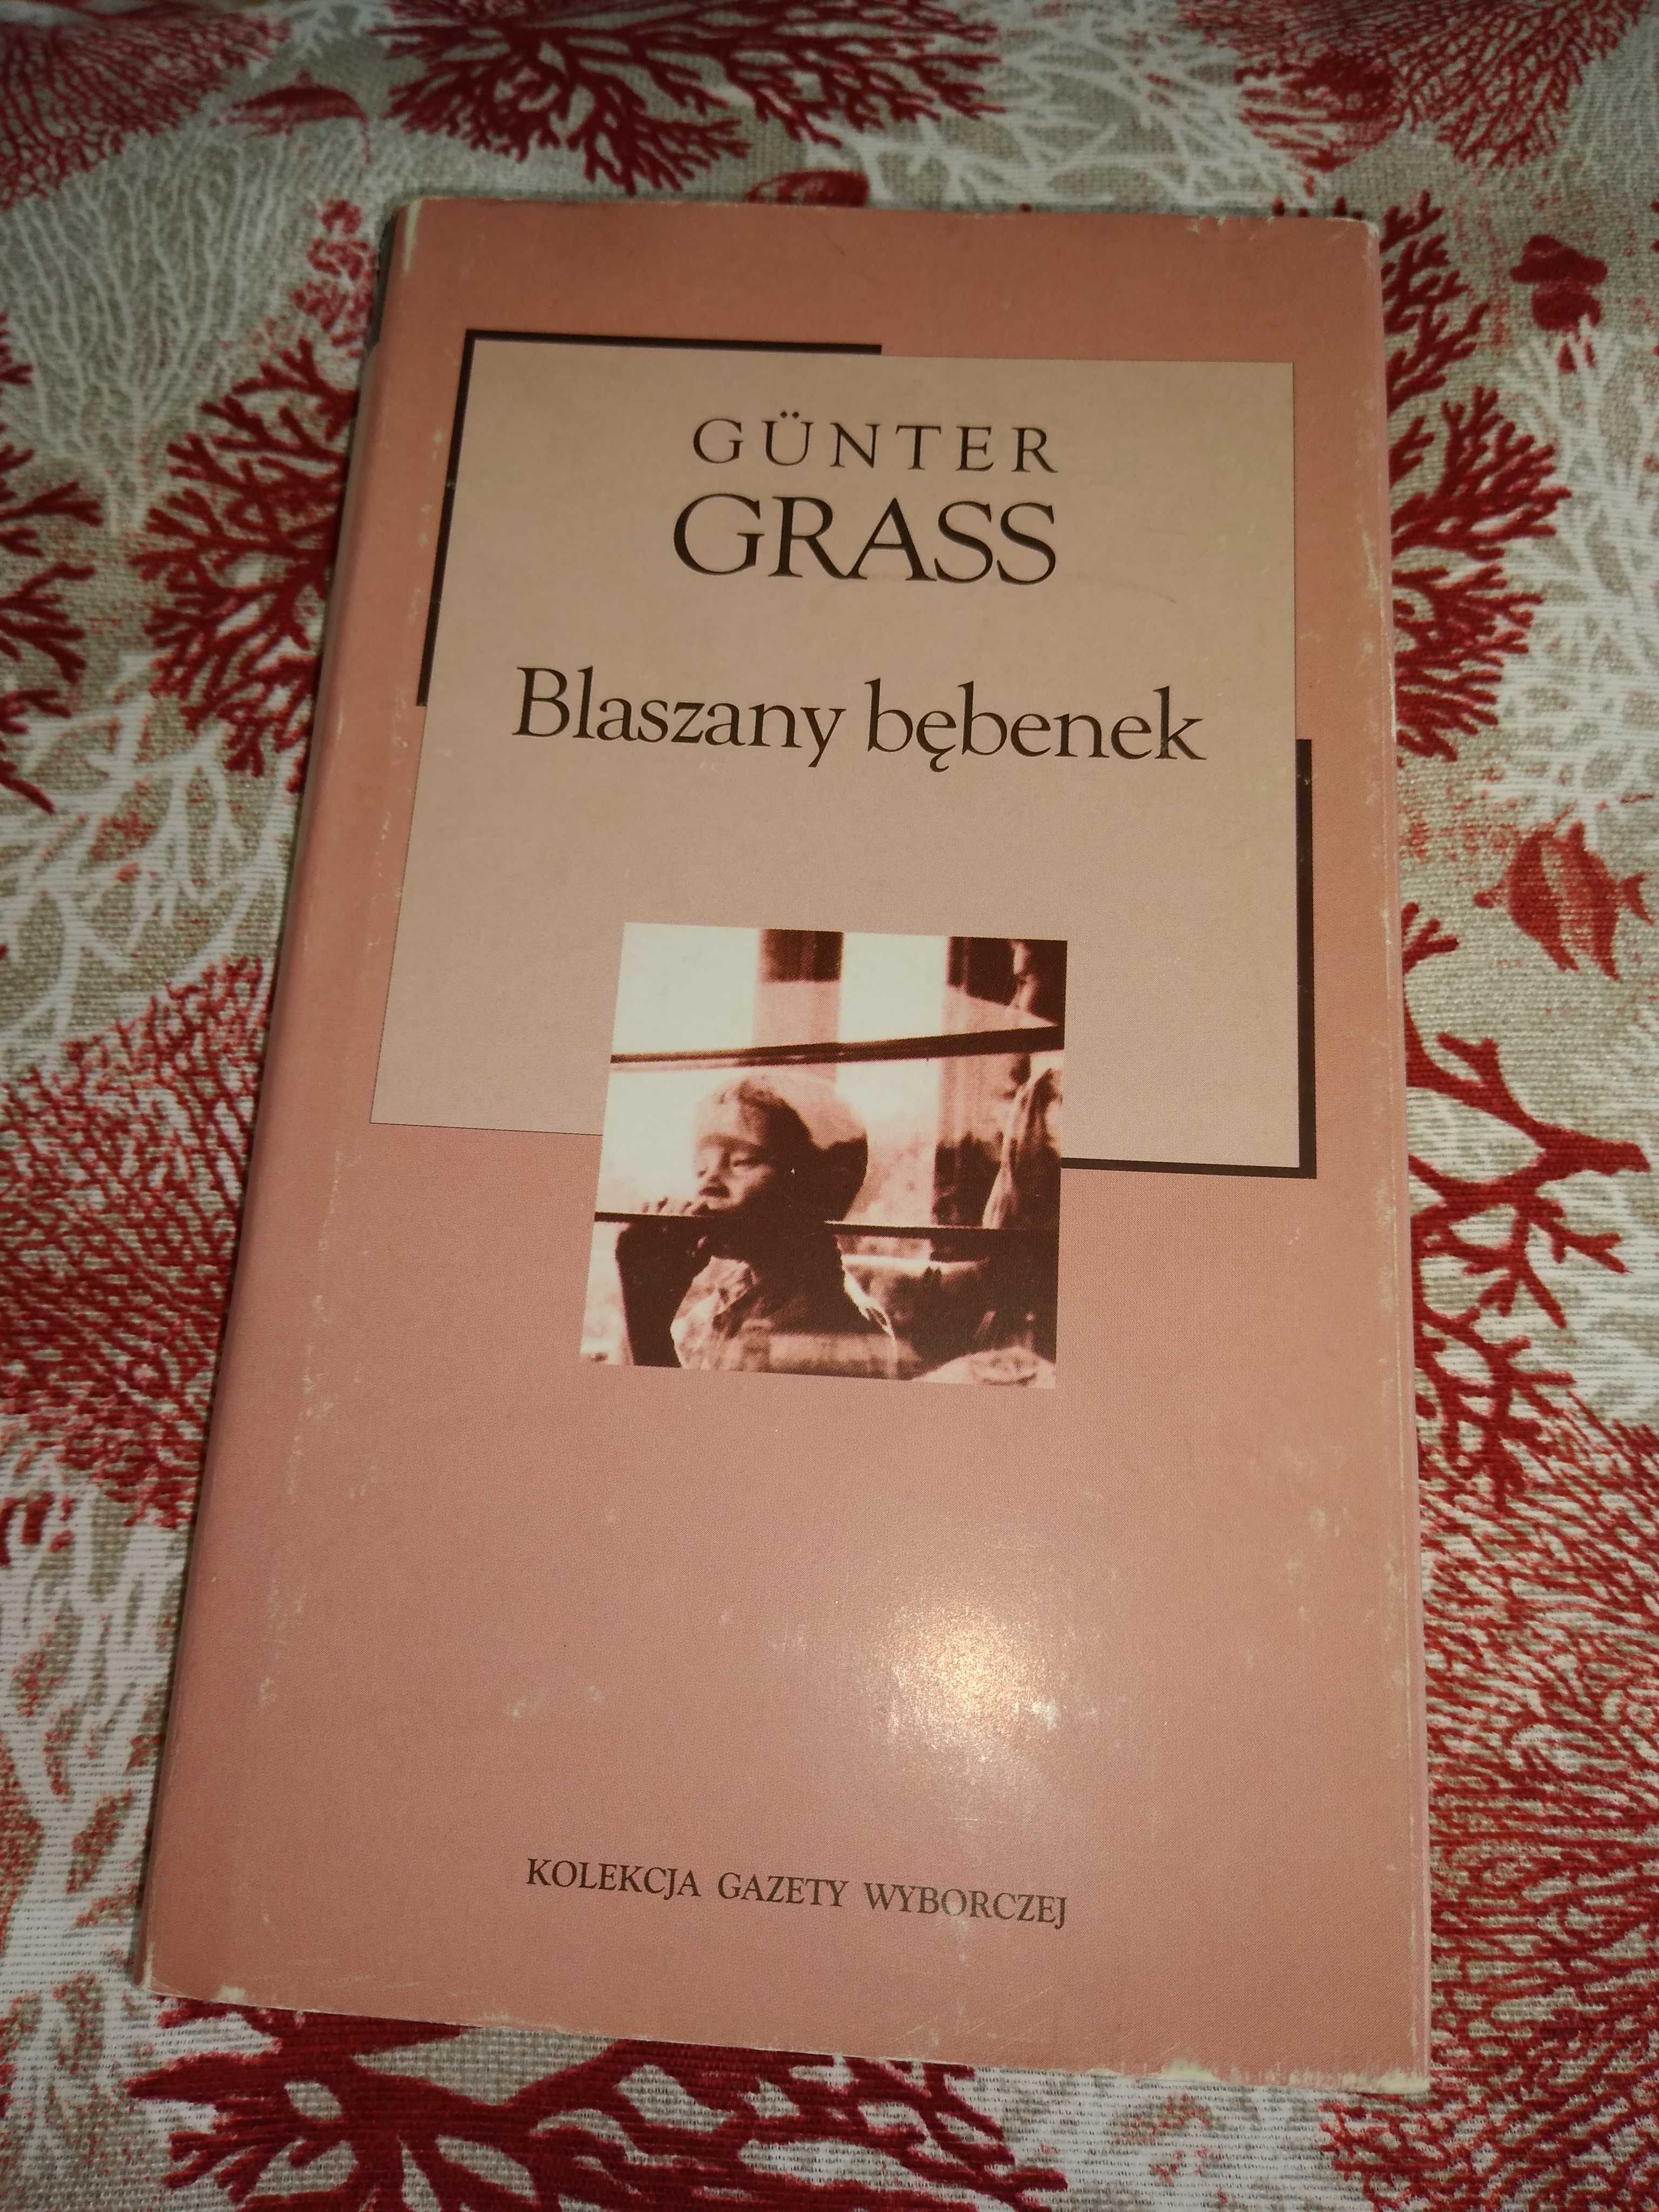 Książka, blaszany bębenek, Gunter Grass